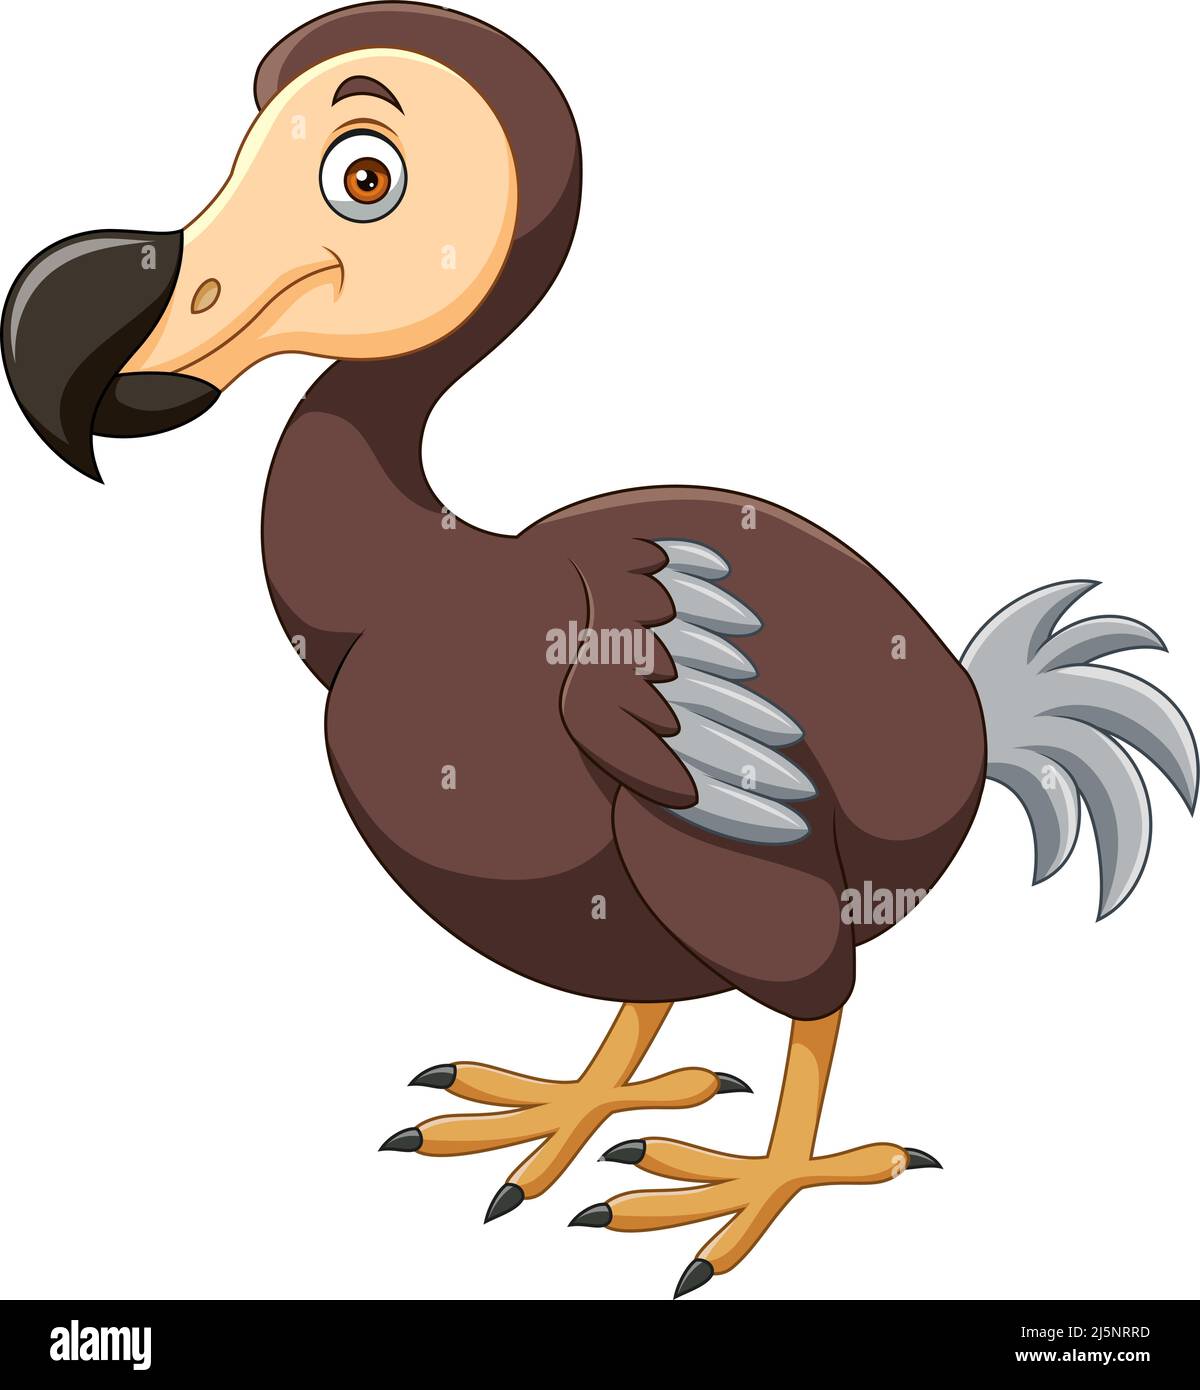 Joli dessin animé d'oiseau dodo sur fond blanc Illustration de Vecteur